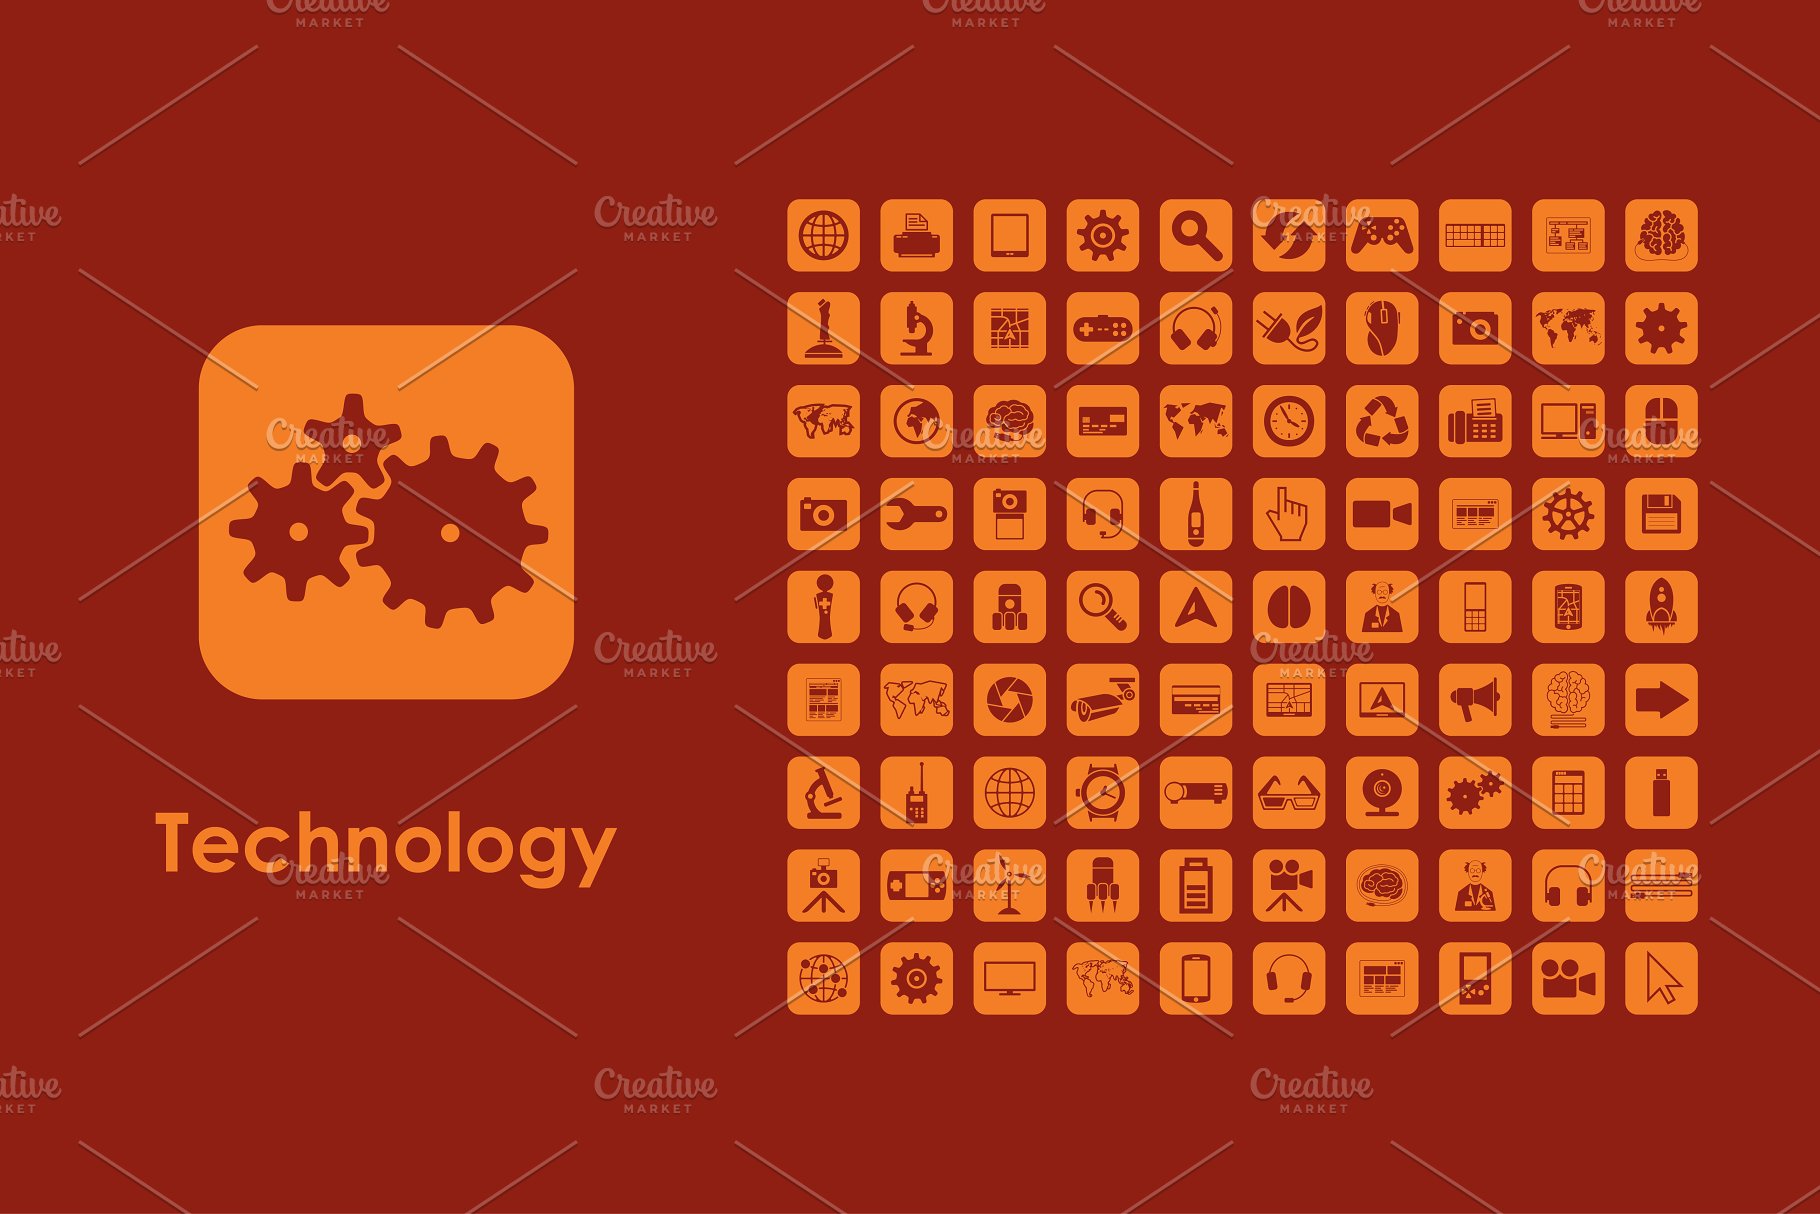 技术矢量图标下载 Technology icons #139